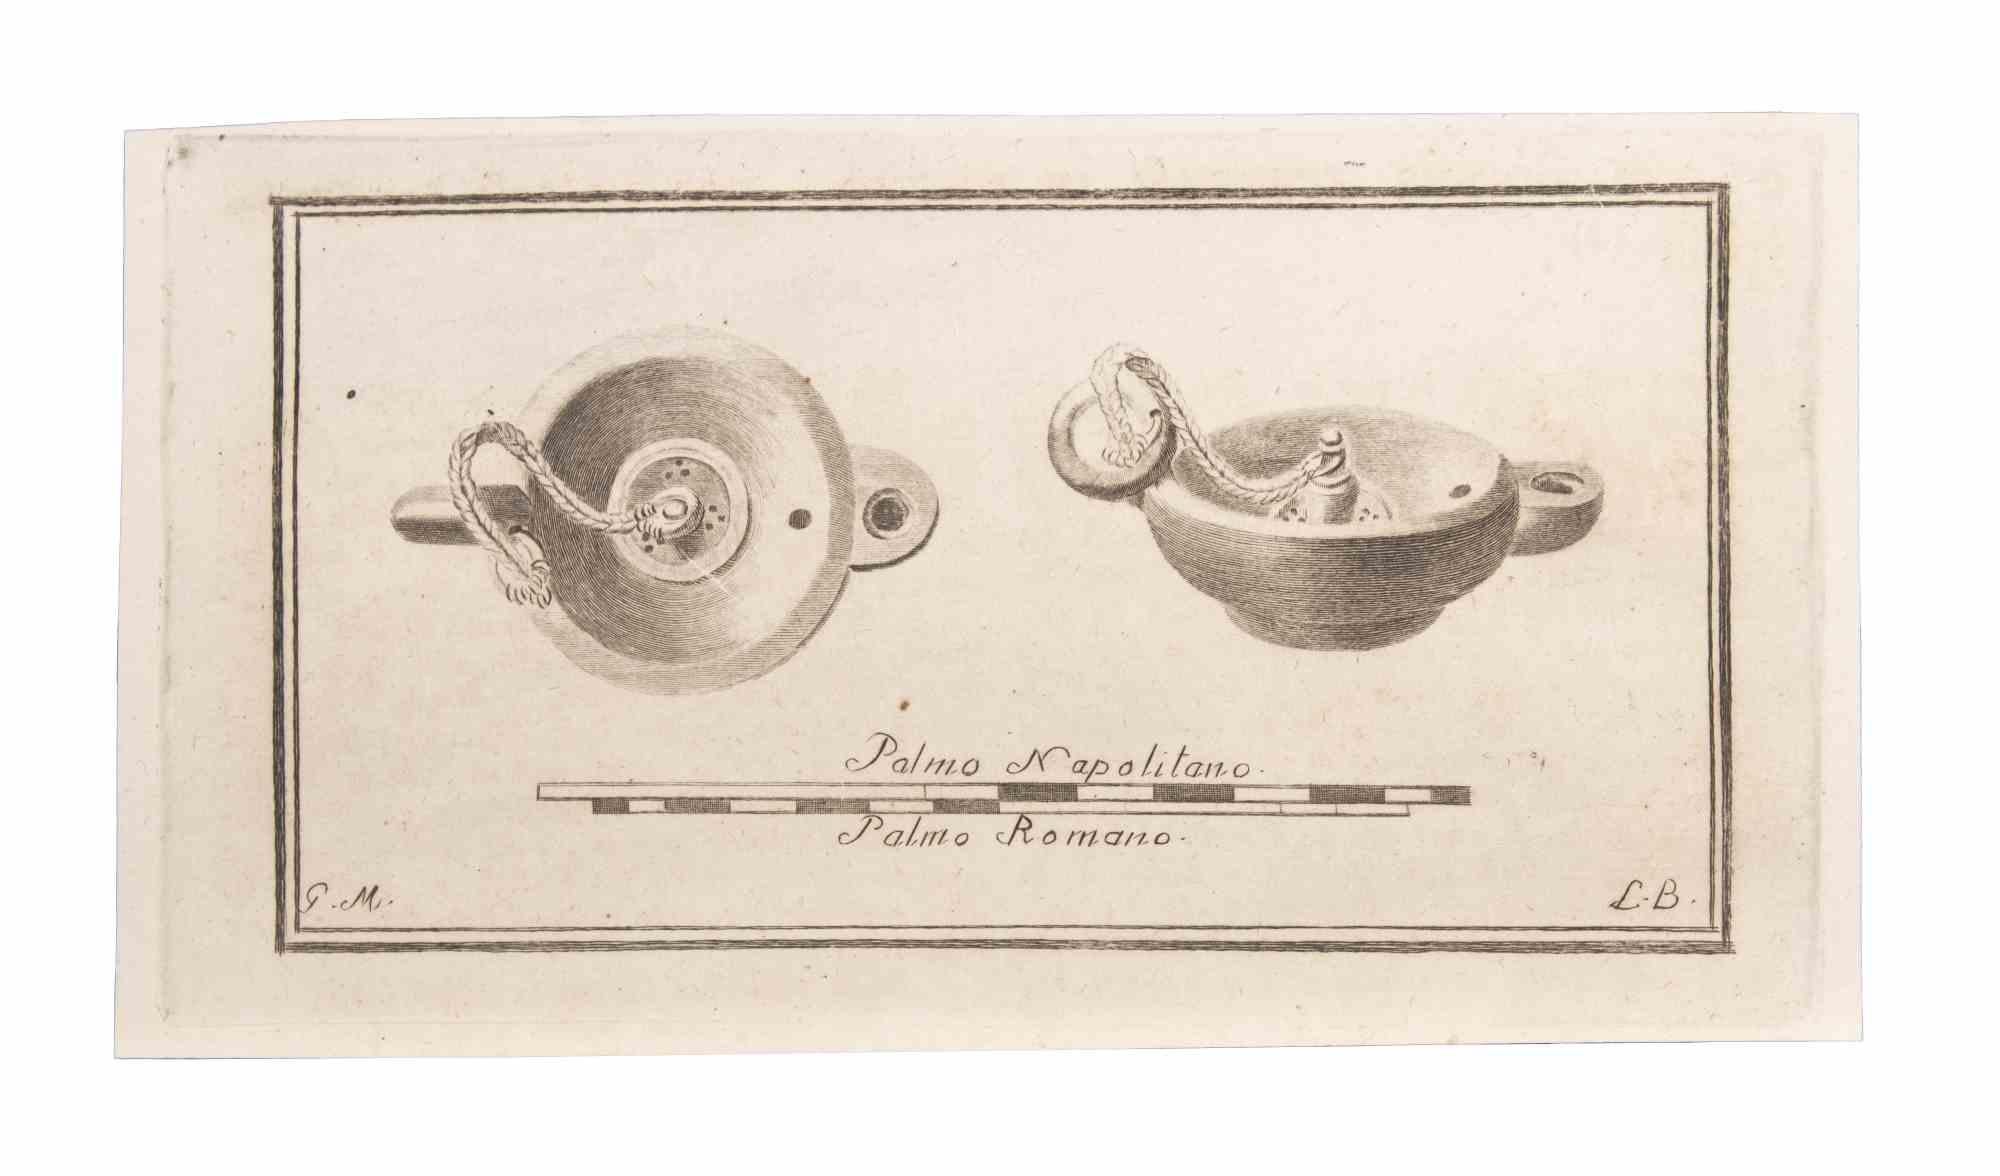 Lampe à huile est une gravure réalisée par  Luigi Biondi (1776-1839).

La gravure appartient à la suite d'estampes "Antiquités d'Herculanum exposées" (titre original : "Le Antichità di Ercolano Esposte"), un volume de huit gravures des découvertes